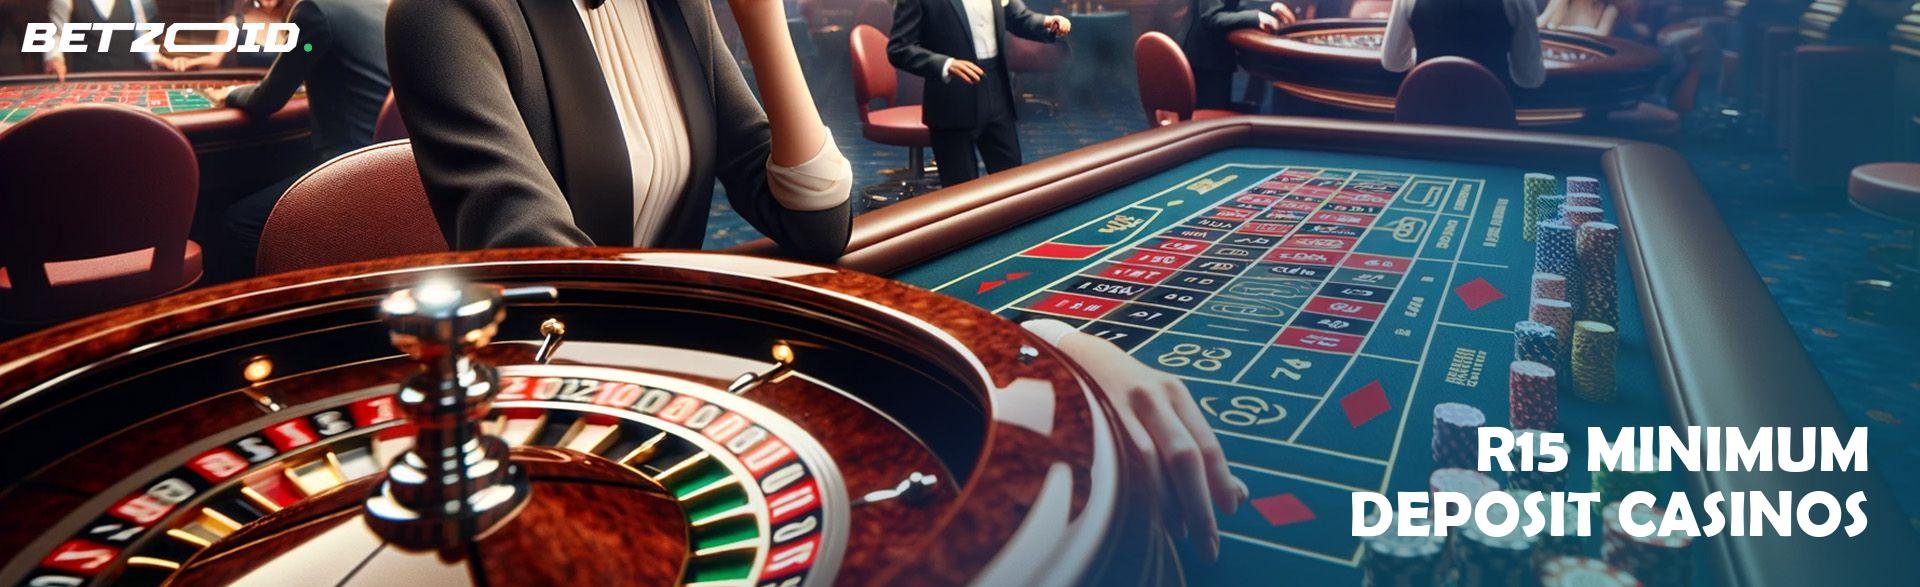 R15 Minimum Deposit Casinos.